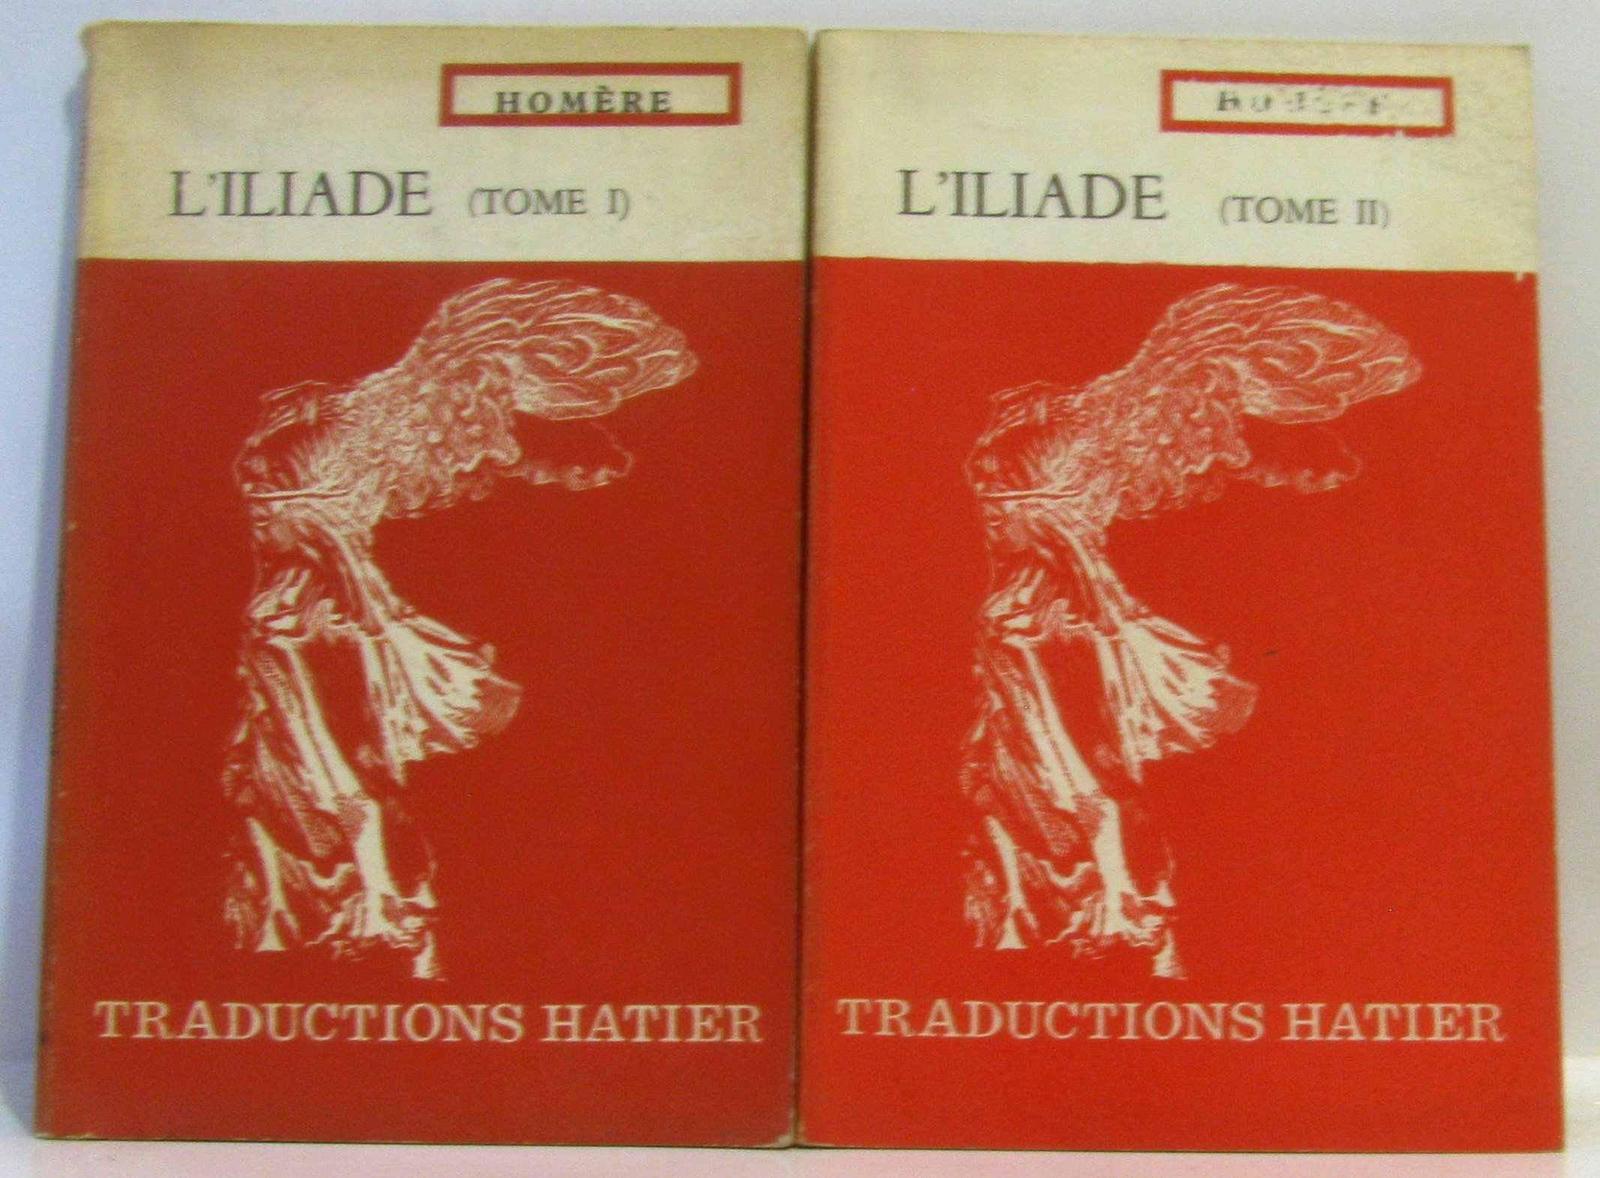 L'Iliade - Tome 1 et 2 (French language)